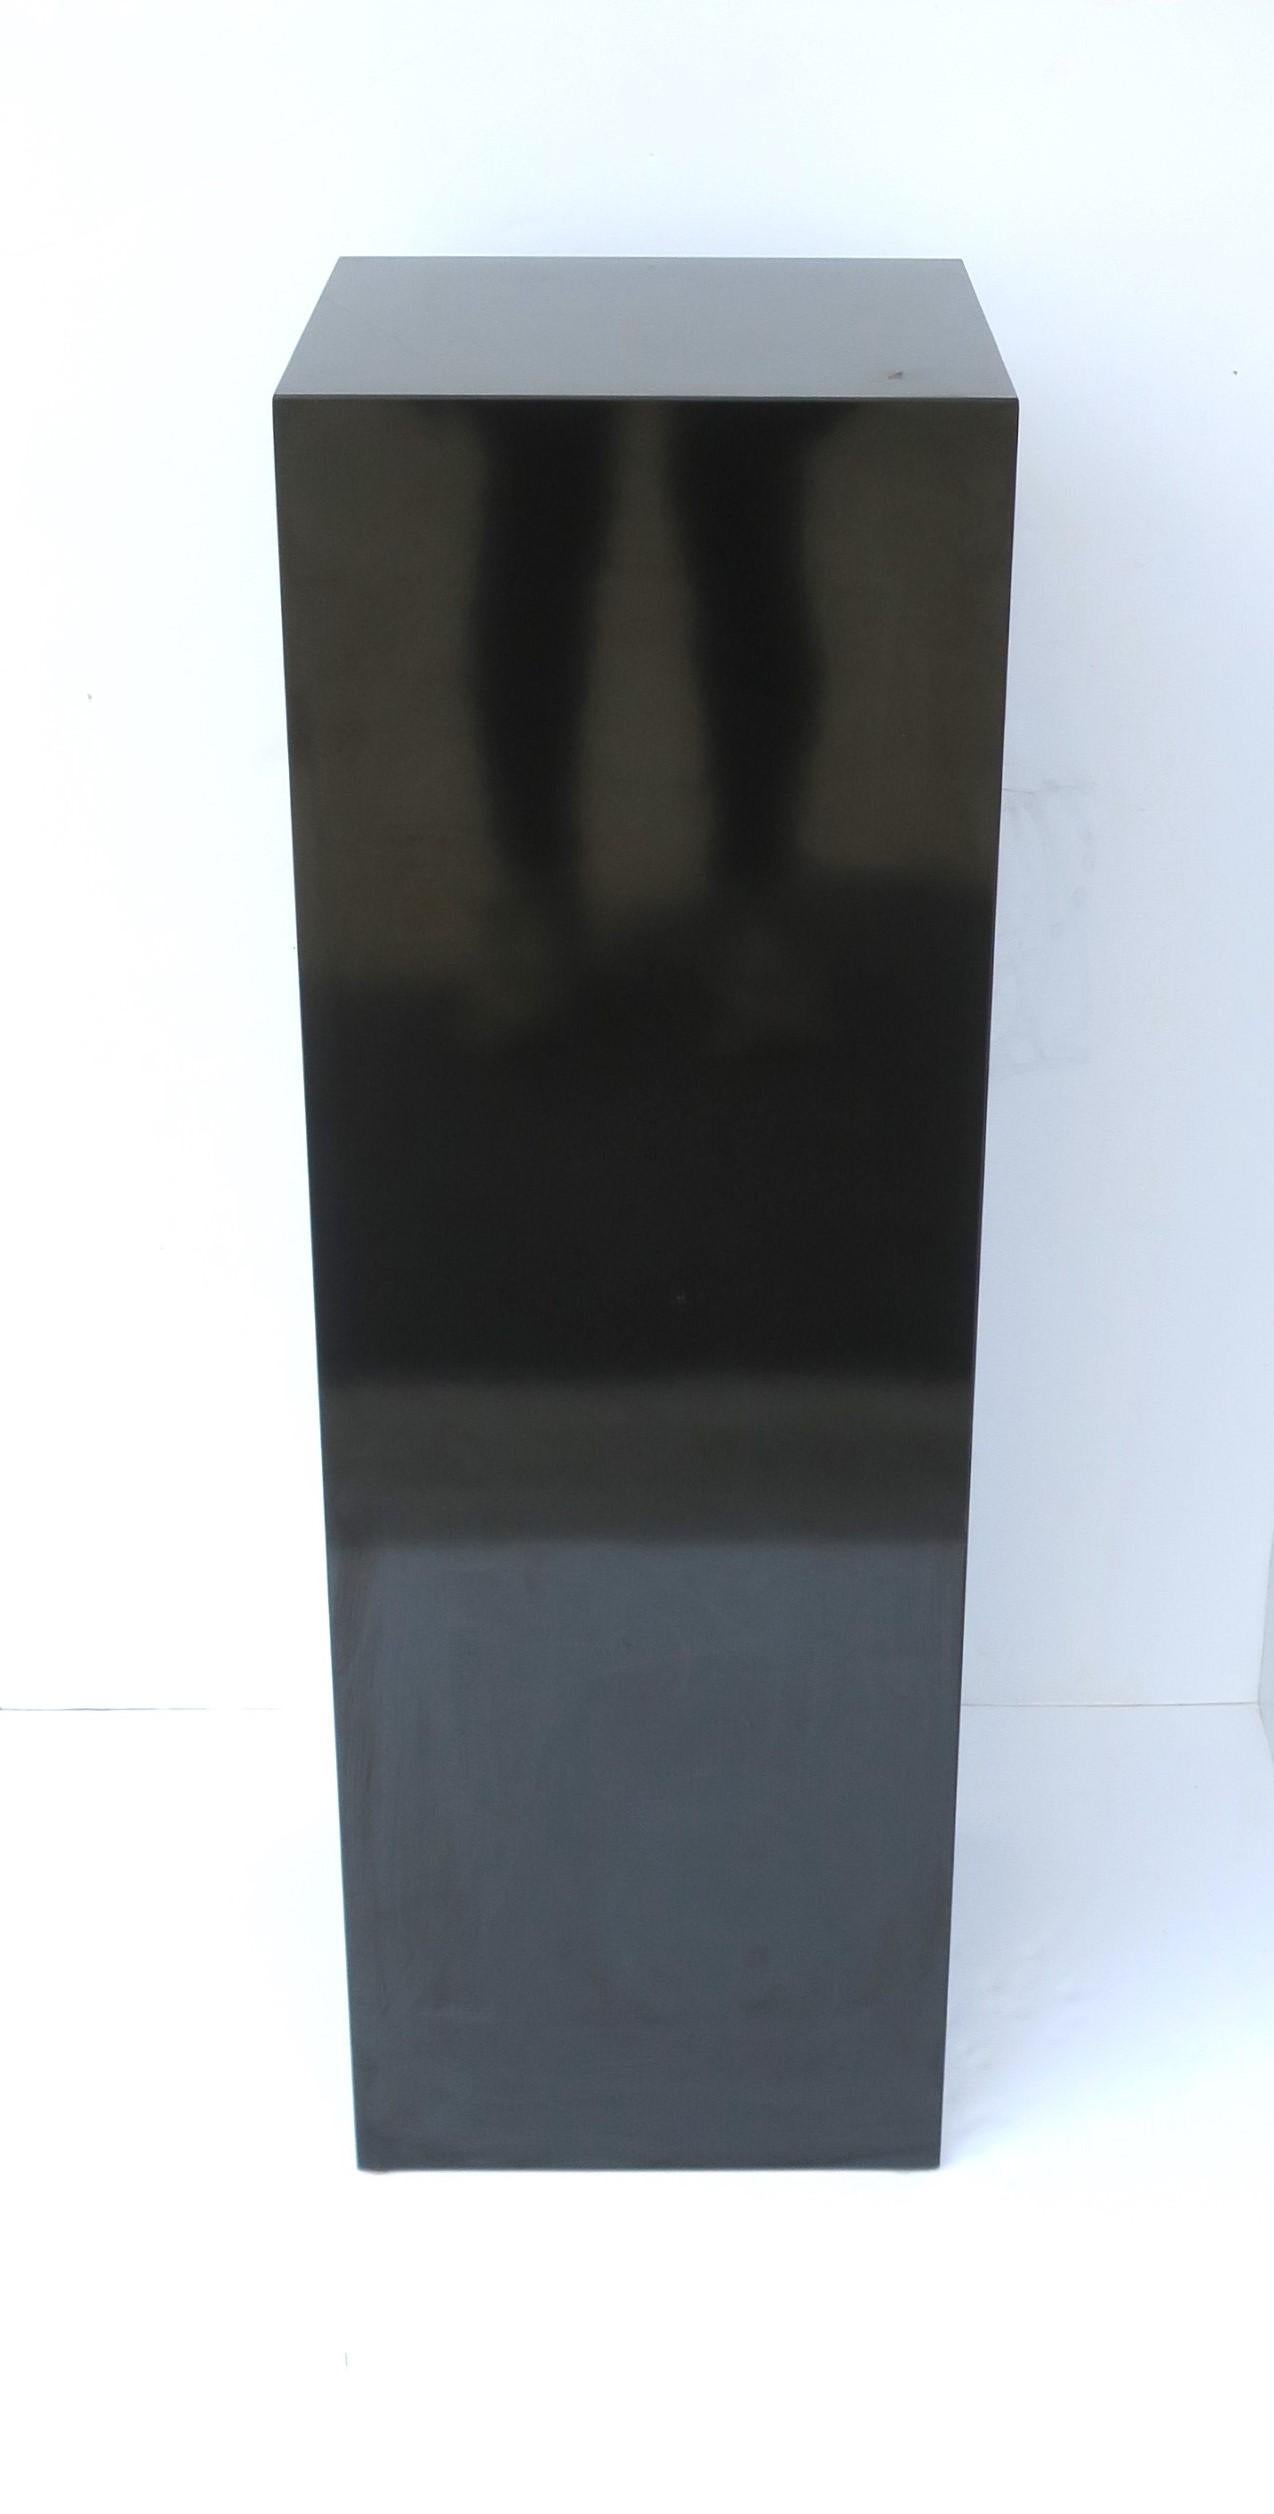 Moderner, mit schwarzem Laminat furnierter Sockelständer, circa Ende des 20. Jahrhunderts, 1970er Jahre. Ein großartiges Stück für Skulptur, Kunst, Pflanze, Display, etc. Paketversand möglich. Abmessungen: 11